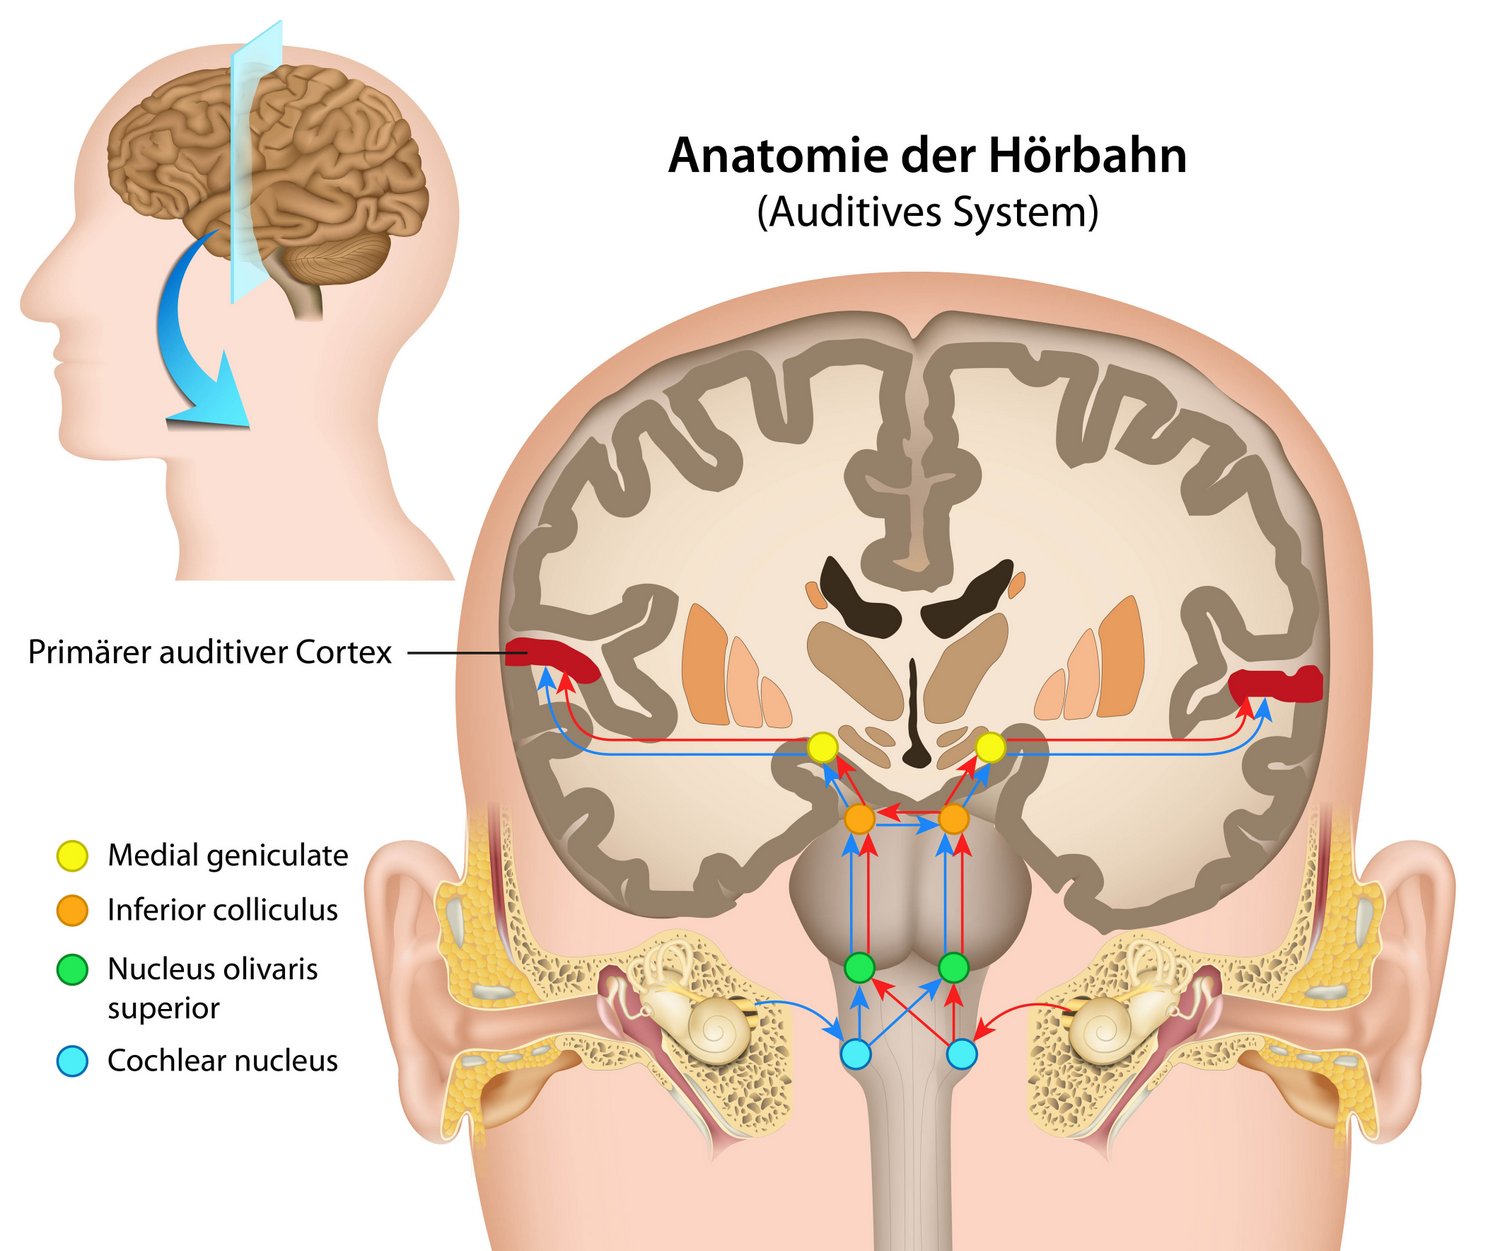 Anatomie der Hörbahn und des auditiven Systems des Menschen: Vom Ohr ins Gehirn (© bilderzwerg / Fotolia)